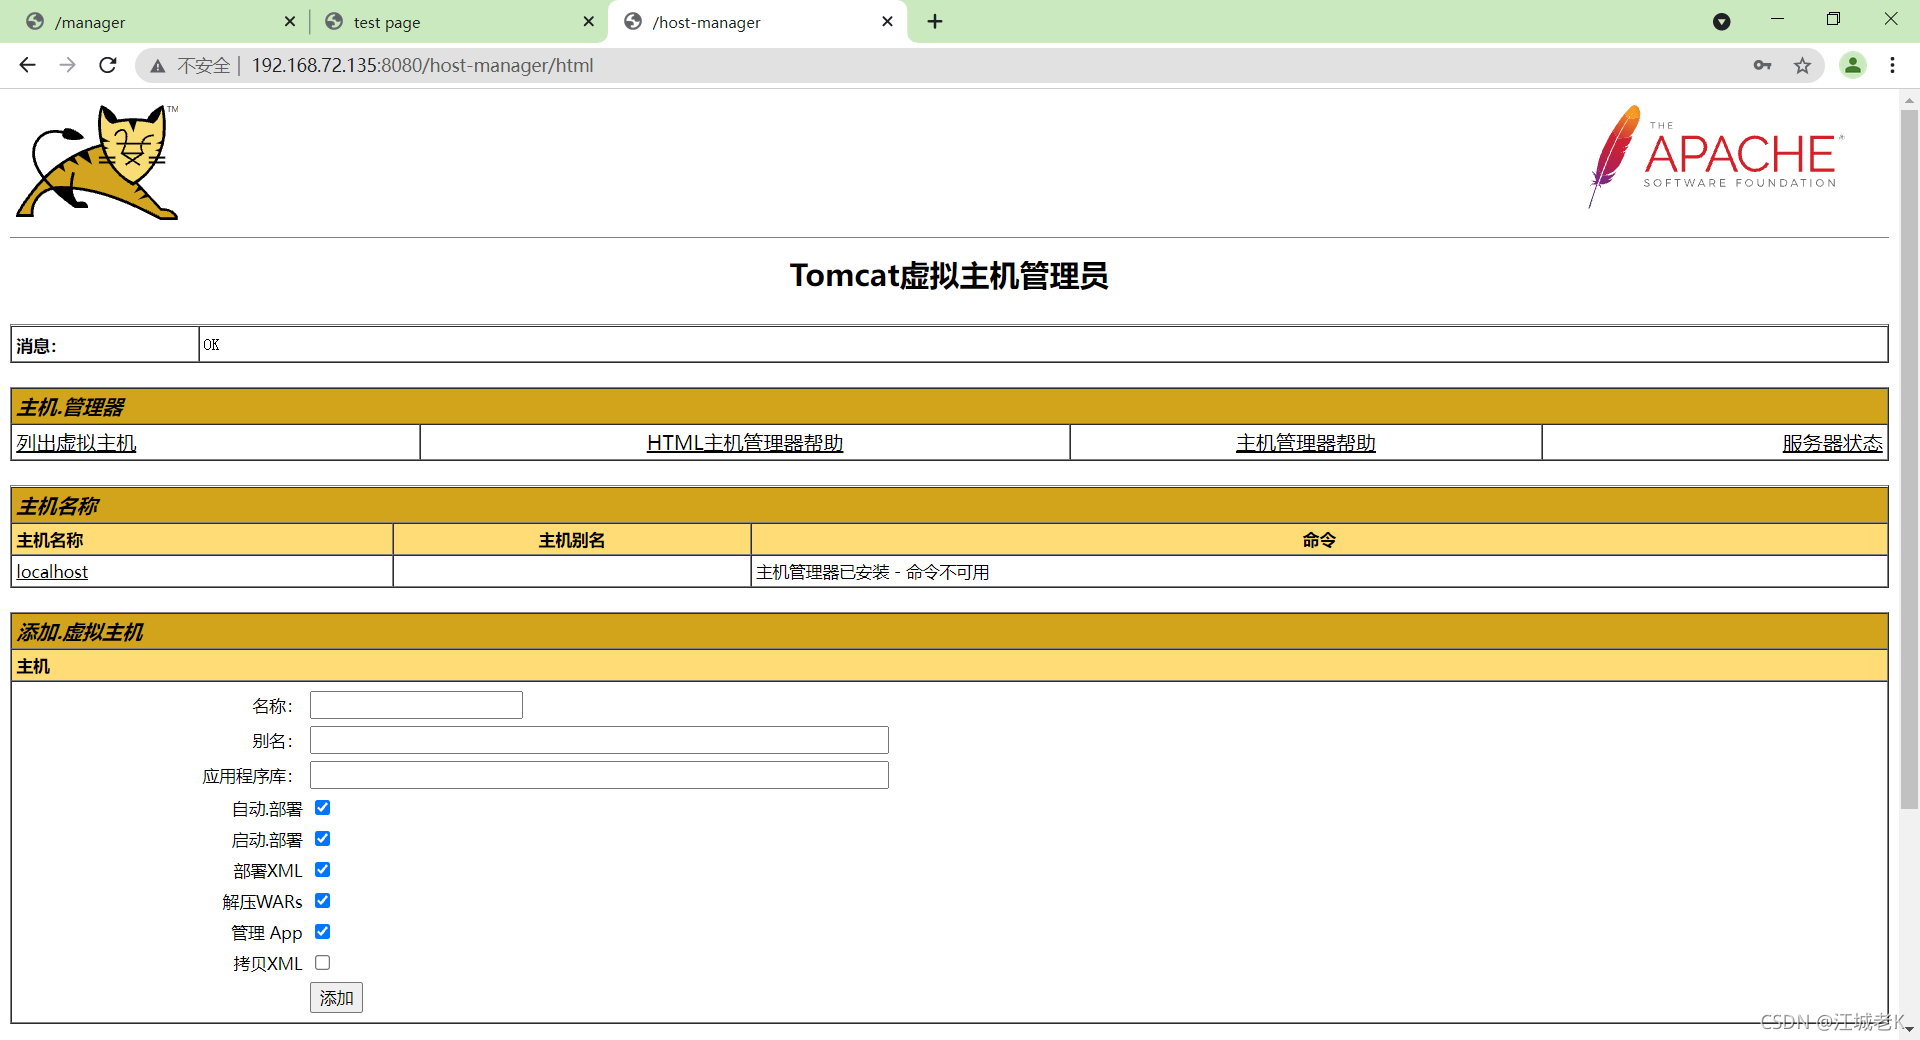 tomcat部署、管理页面的配置